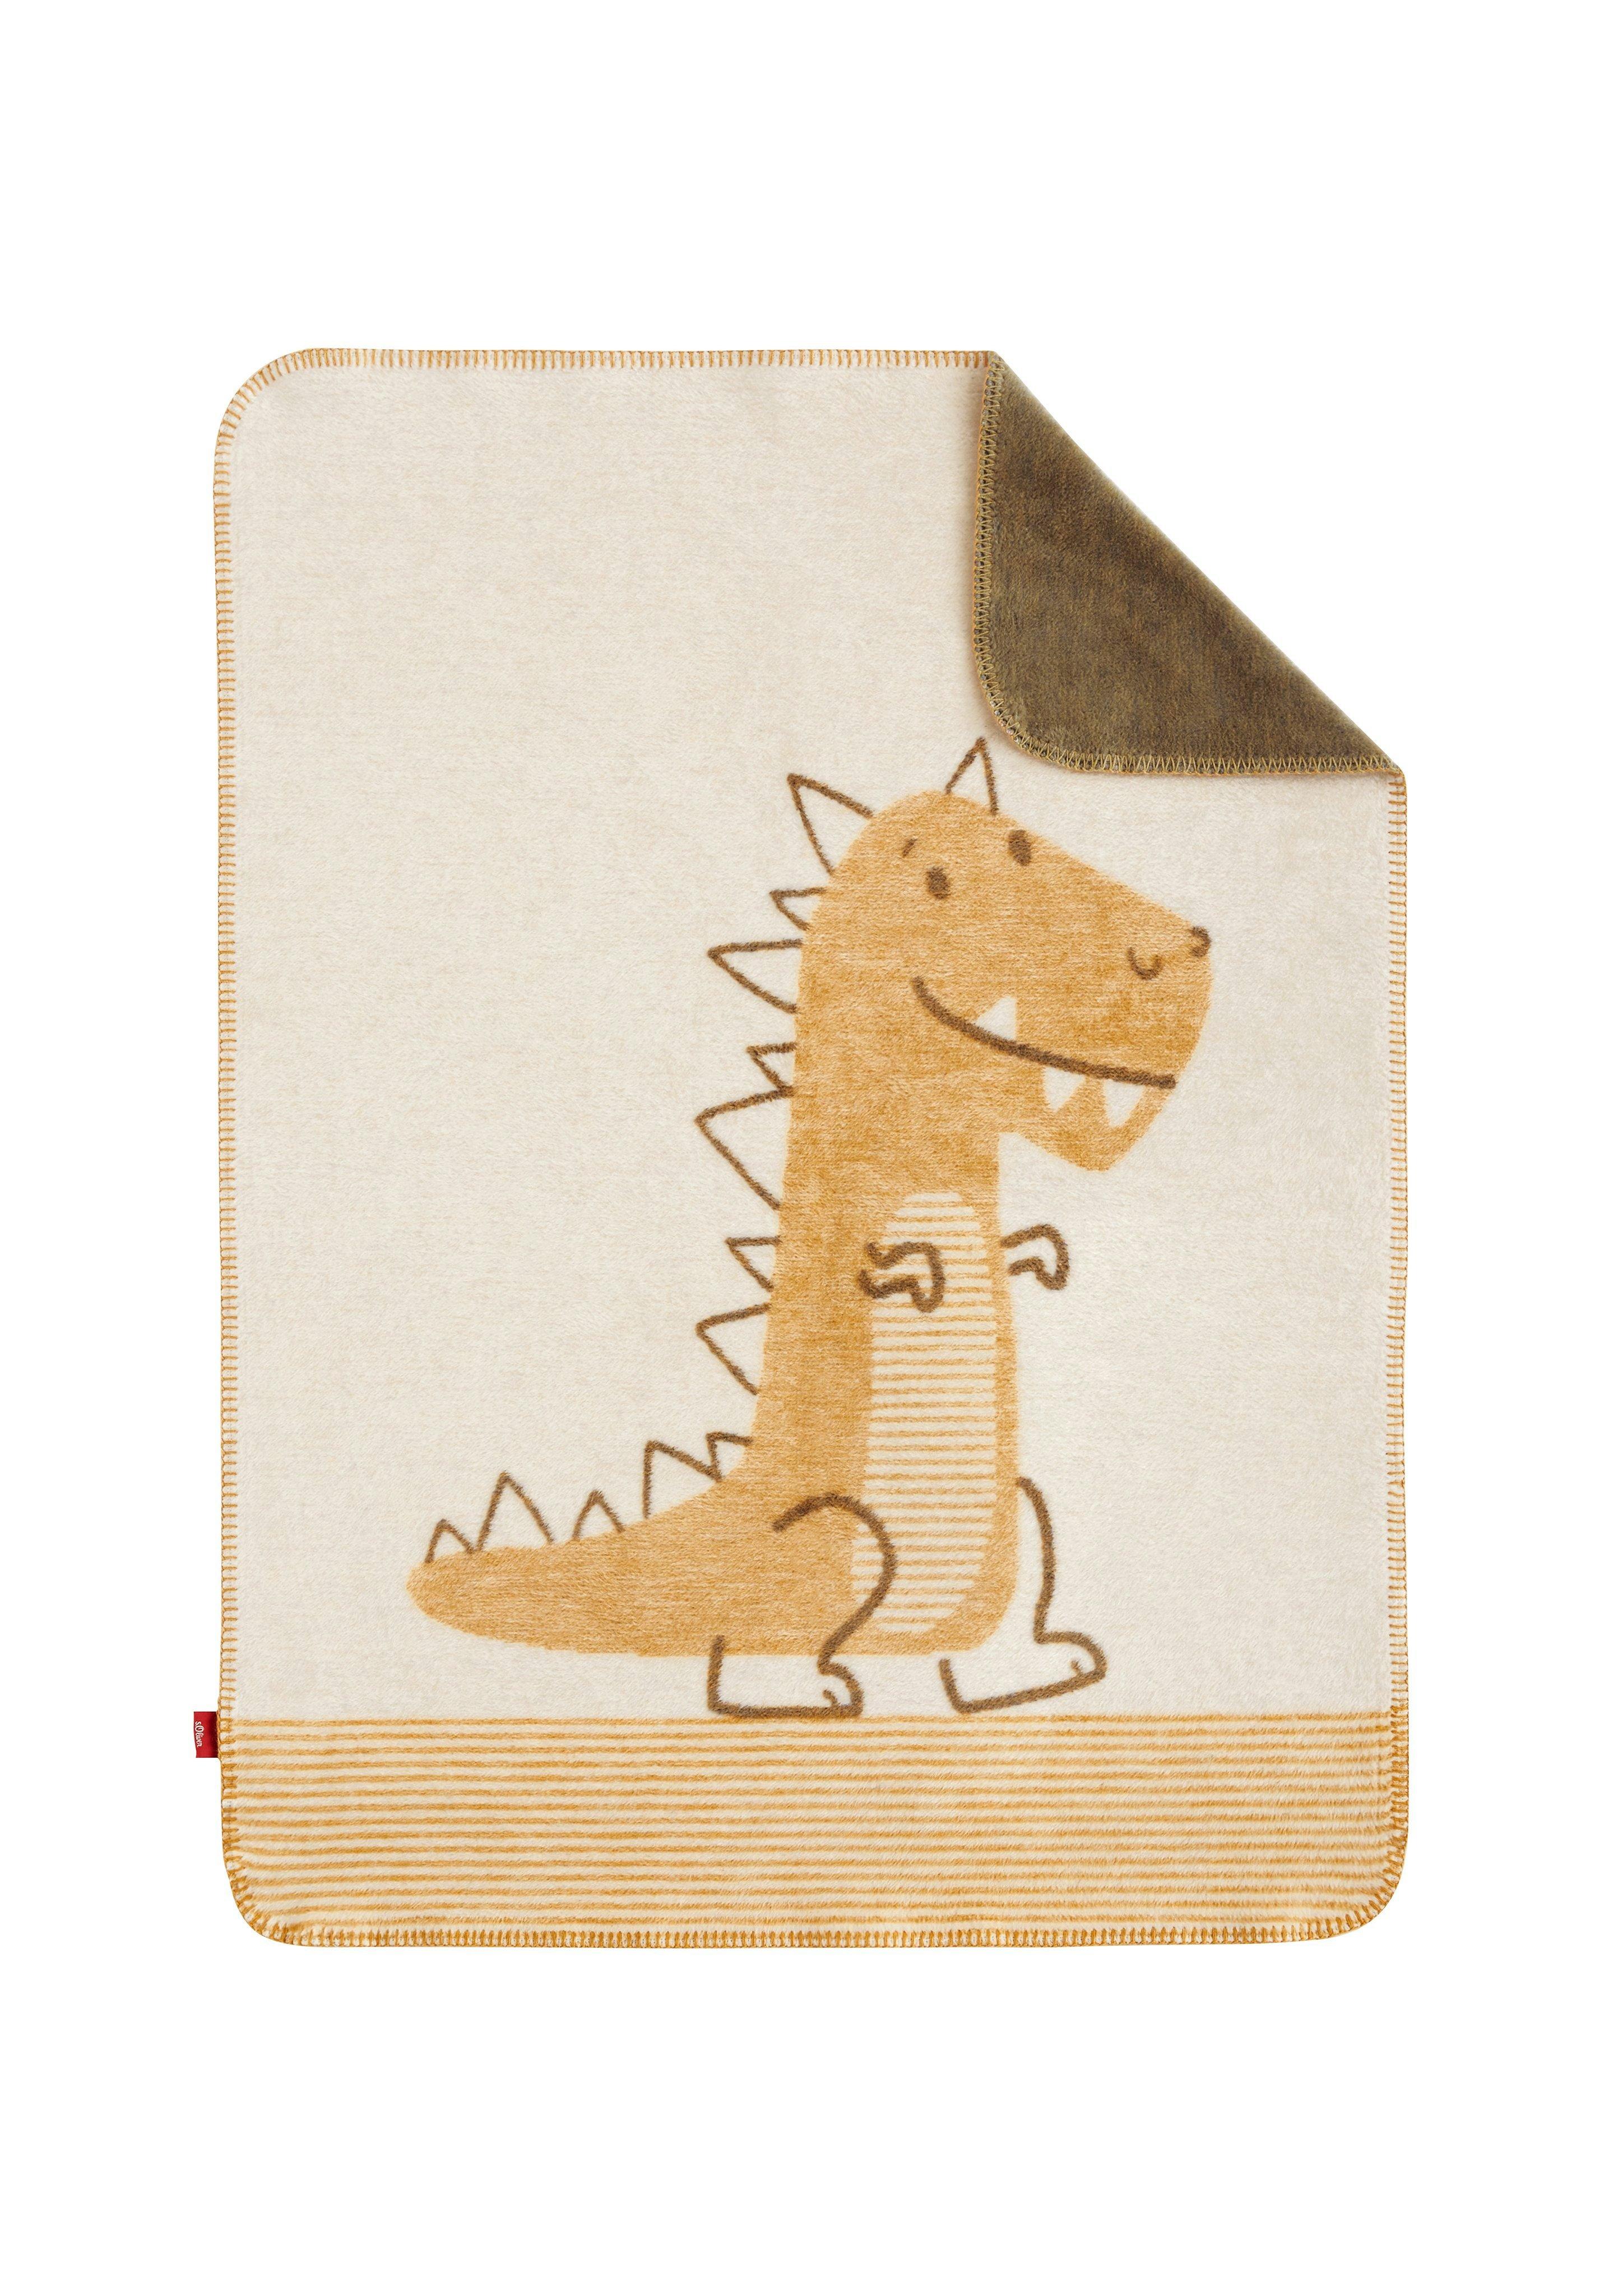 Jacquard-Decke mit Dino-Motiv - helles beige